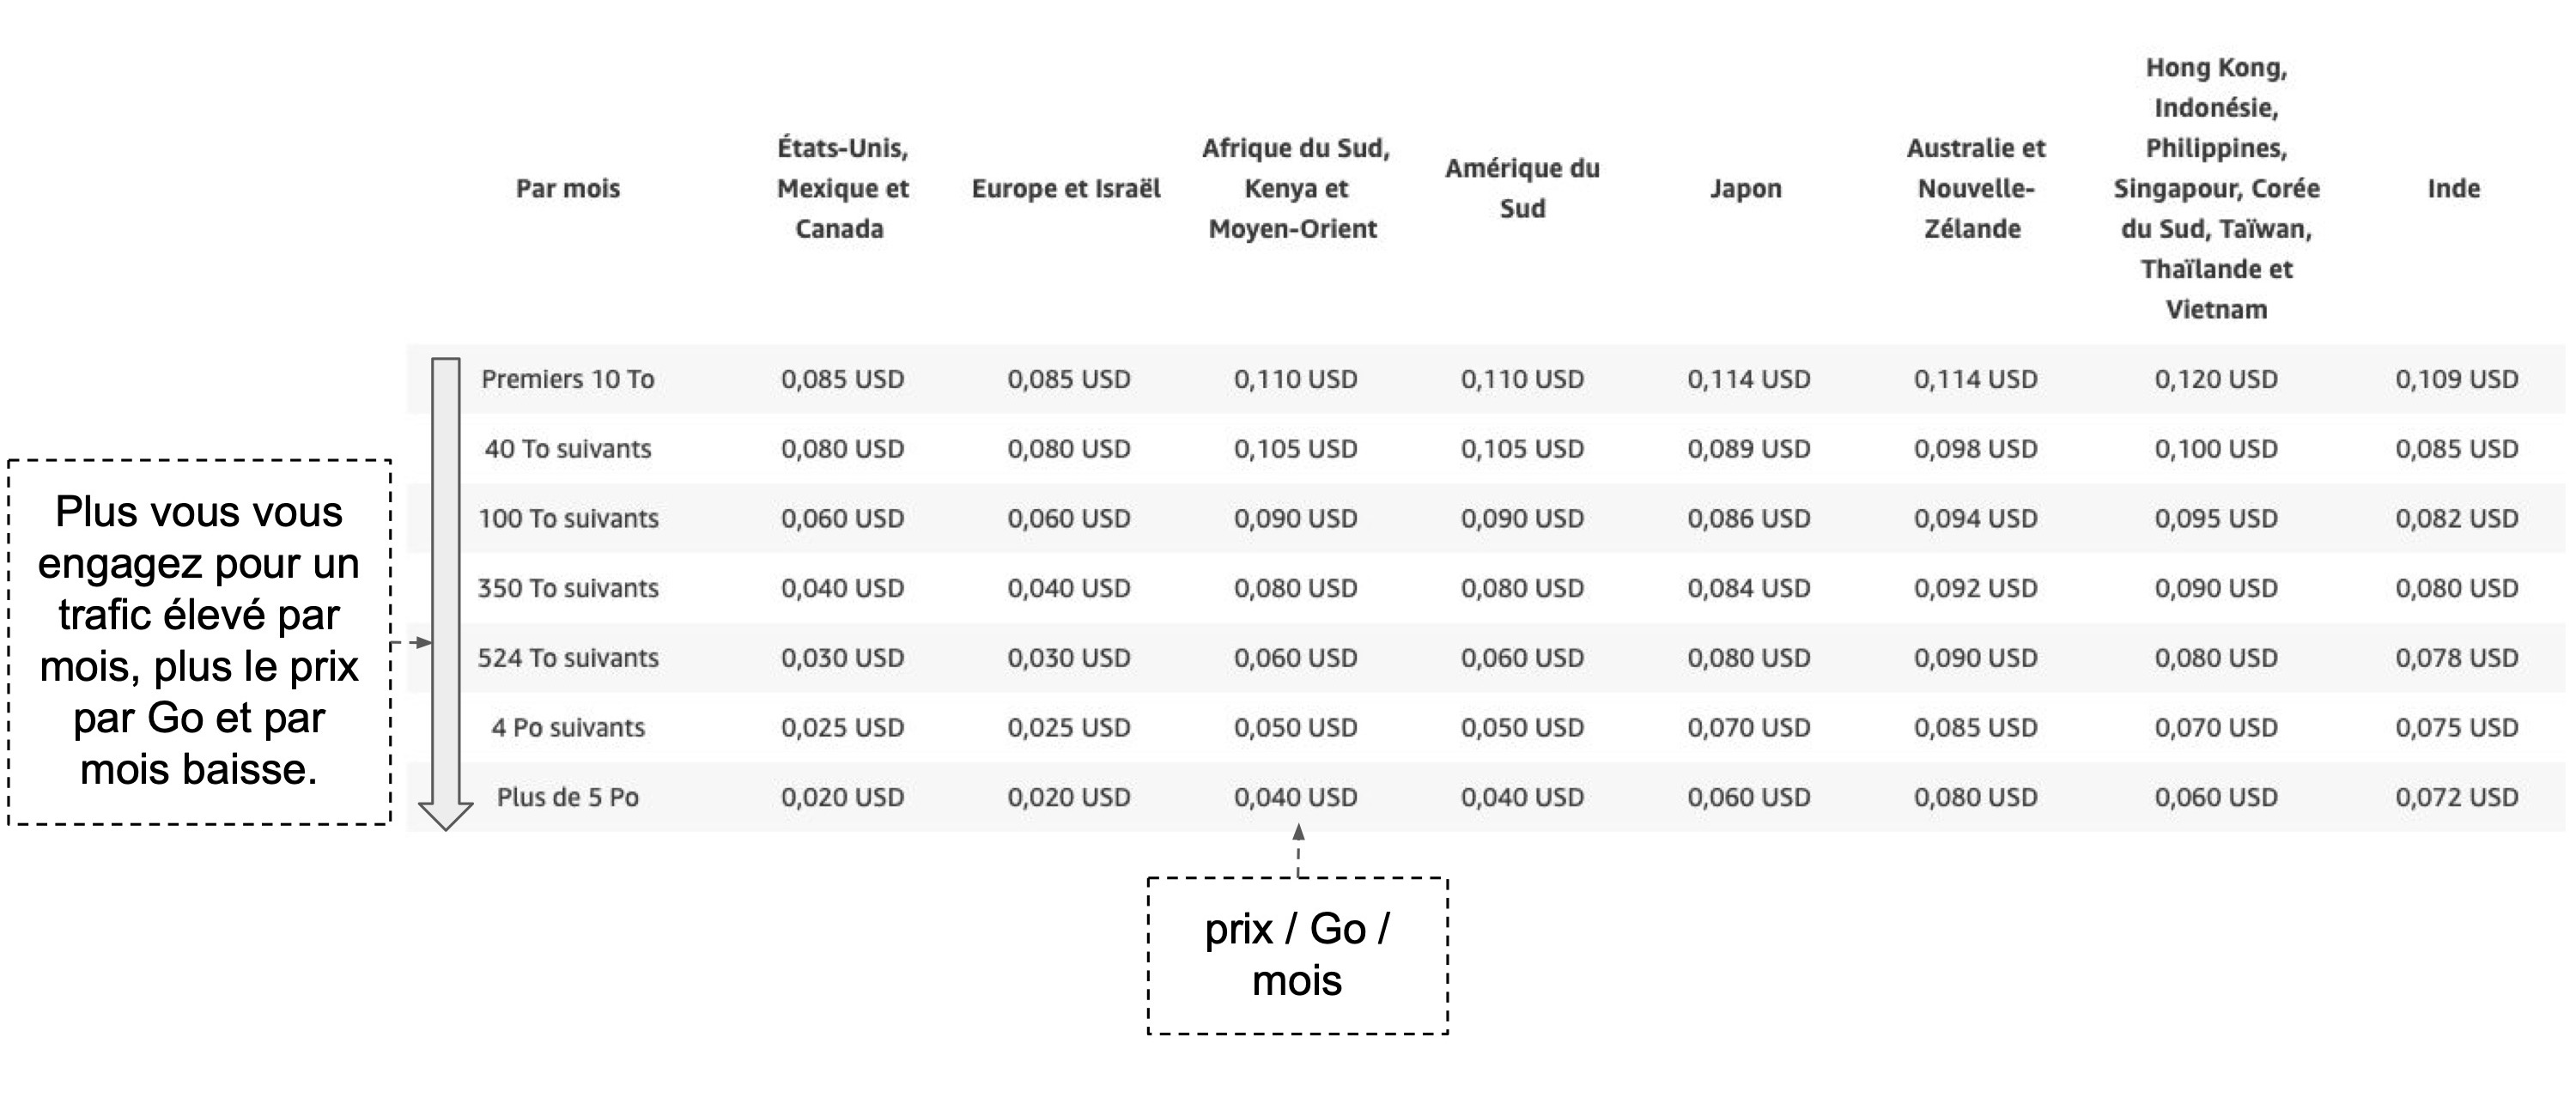 Capture d'écran: un tableau comparatif des tarifications par mois